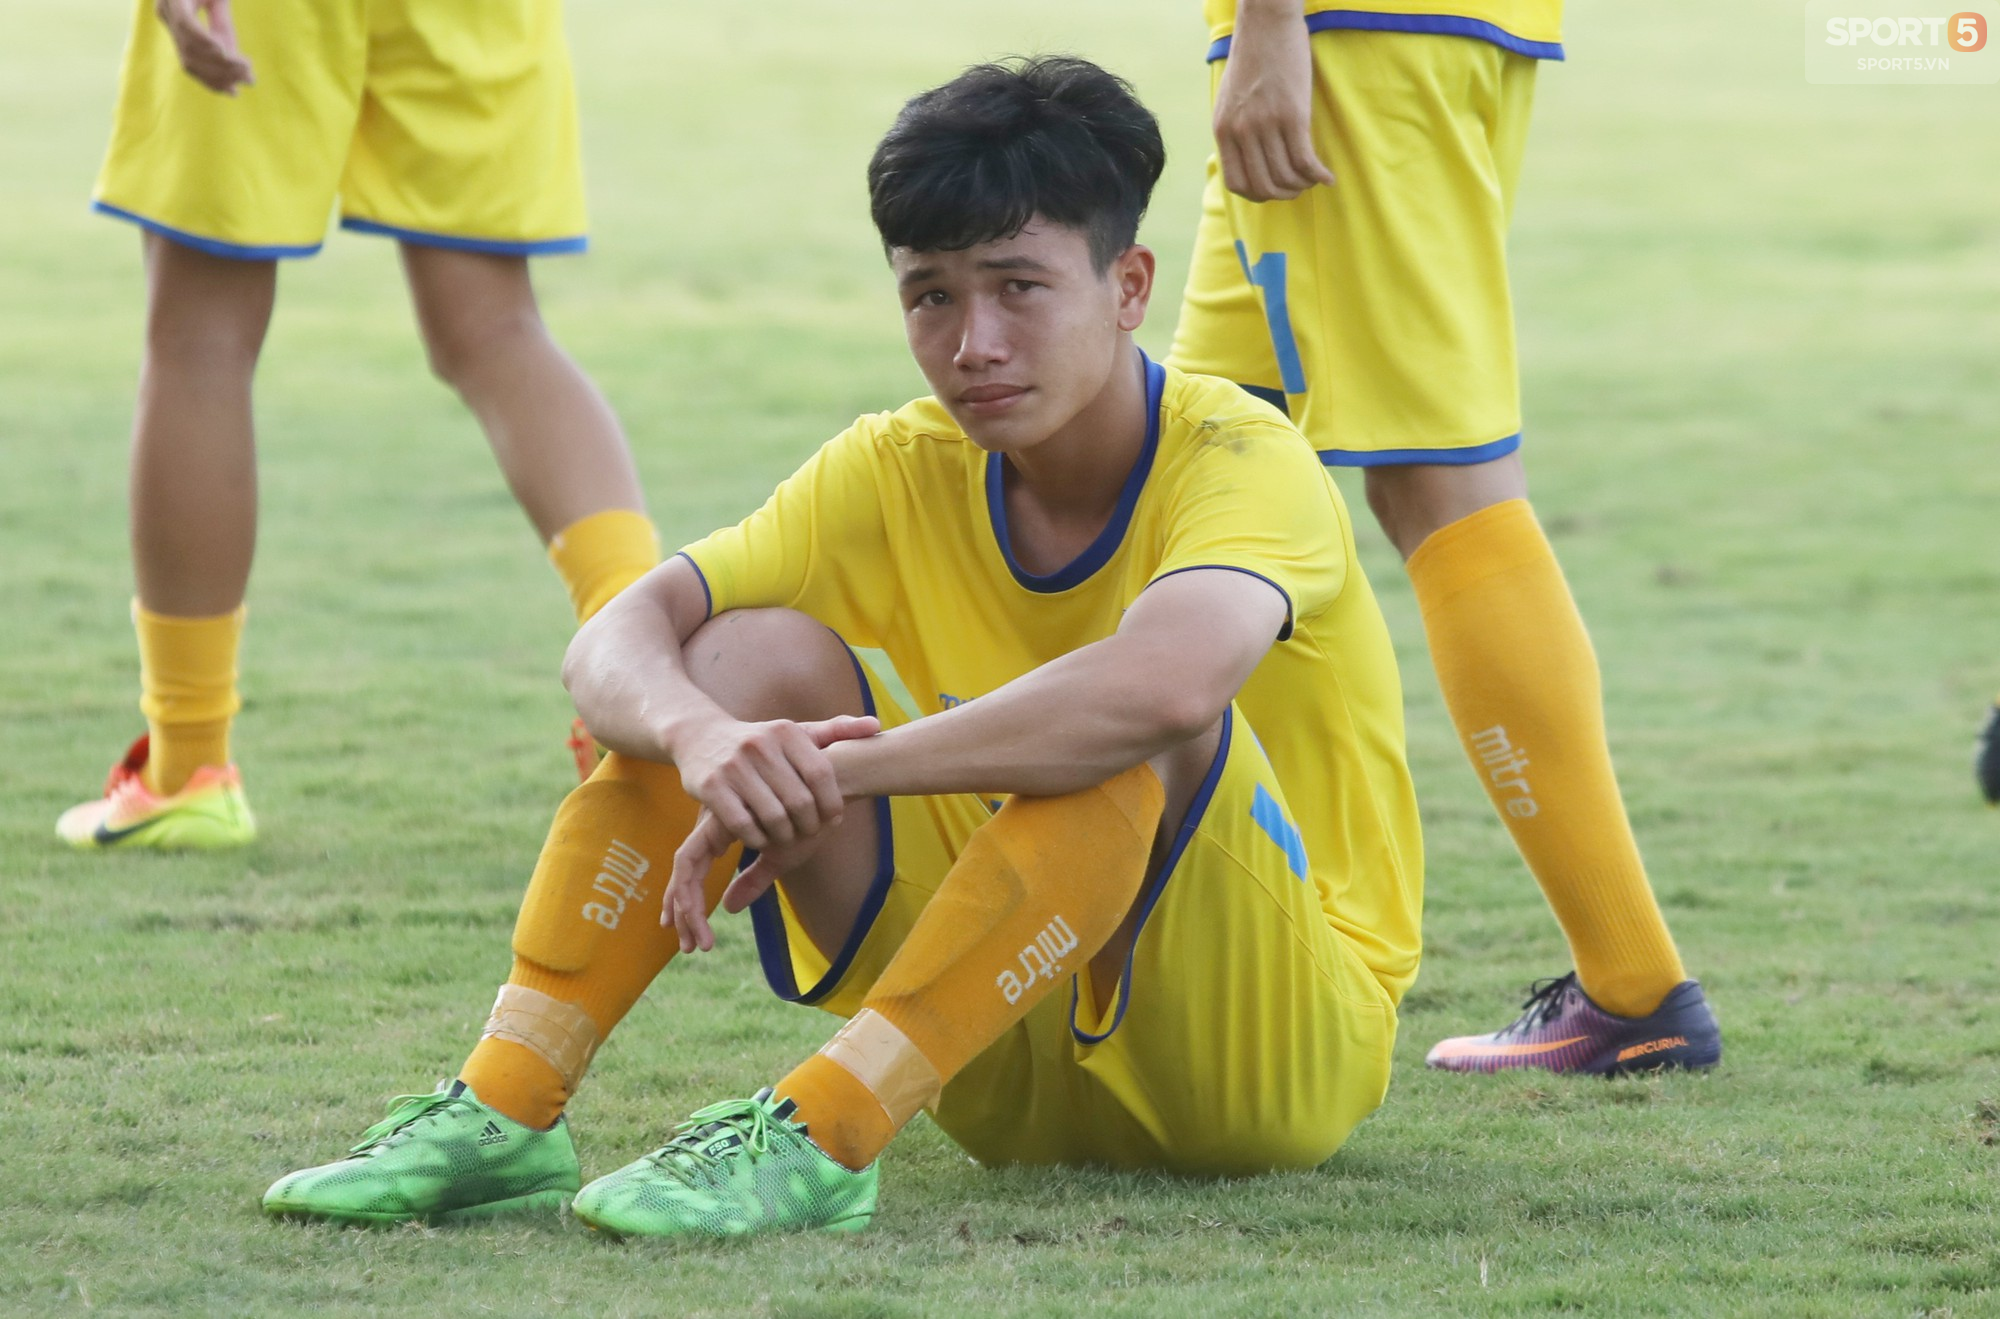 Giọt nước mắt thua cuộc trái chiều niềm vui chiến thắng trong trận chung kết U17 Quốc gia 2018 - Ảnh 9.